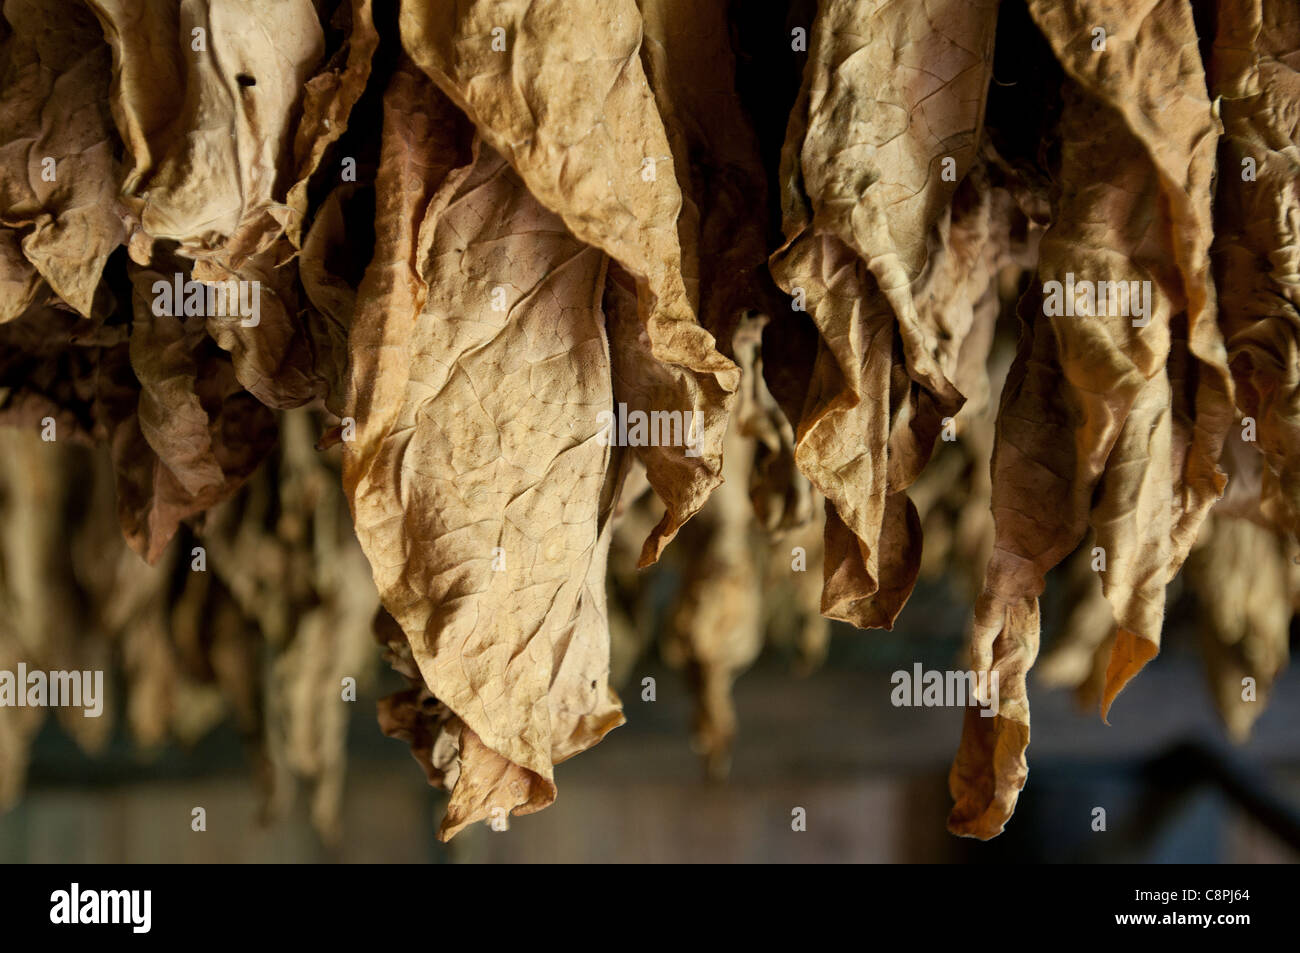 Le séchage des feuilles de tabac cubain dans une grange, Vinales, Cuba Banque D'Images